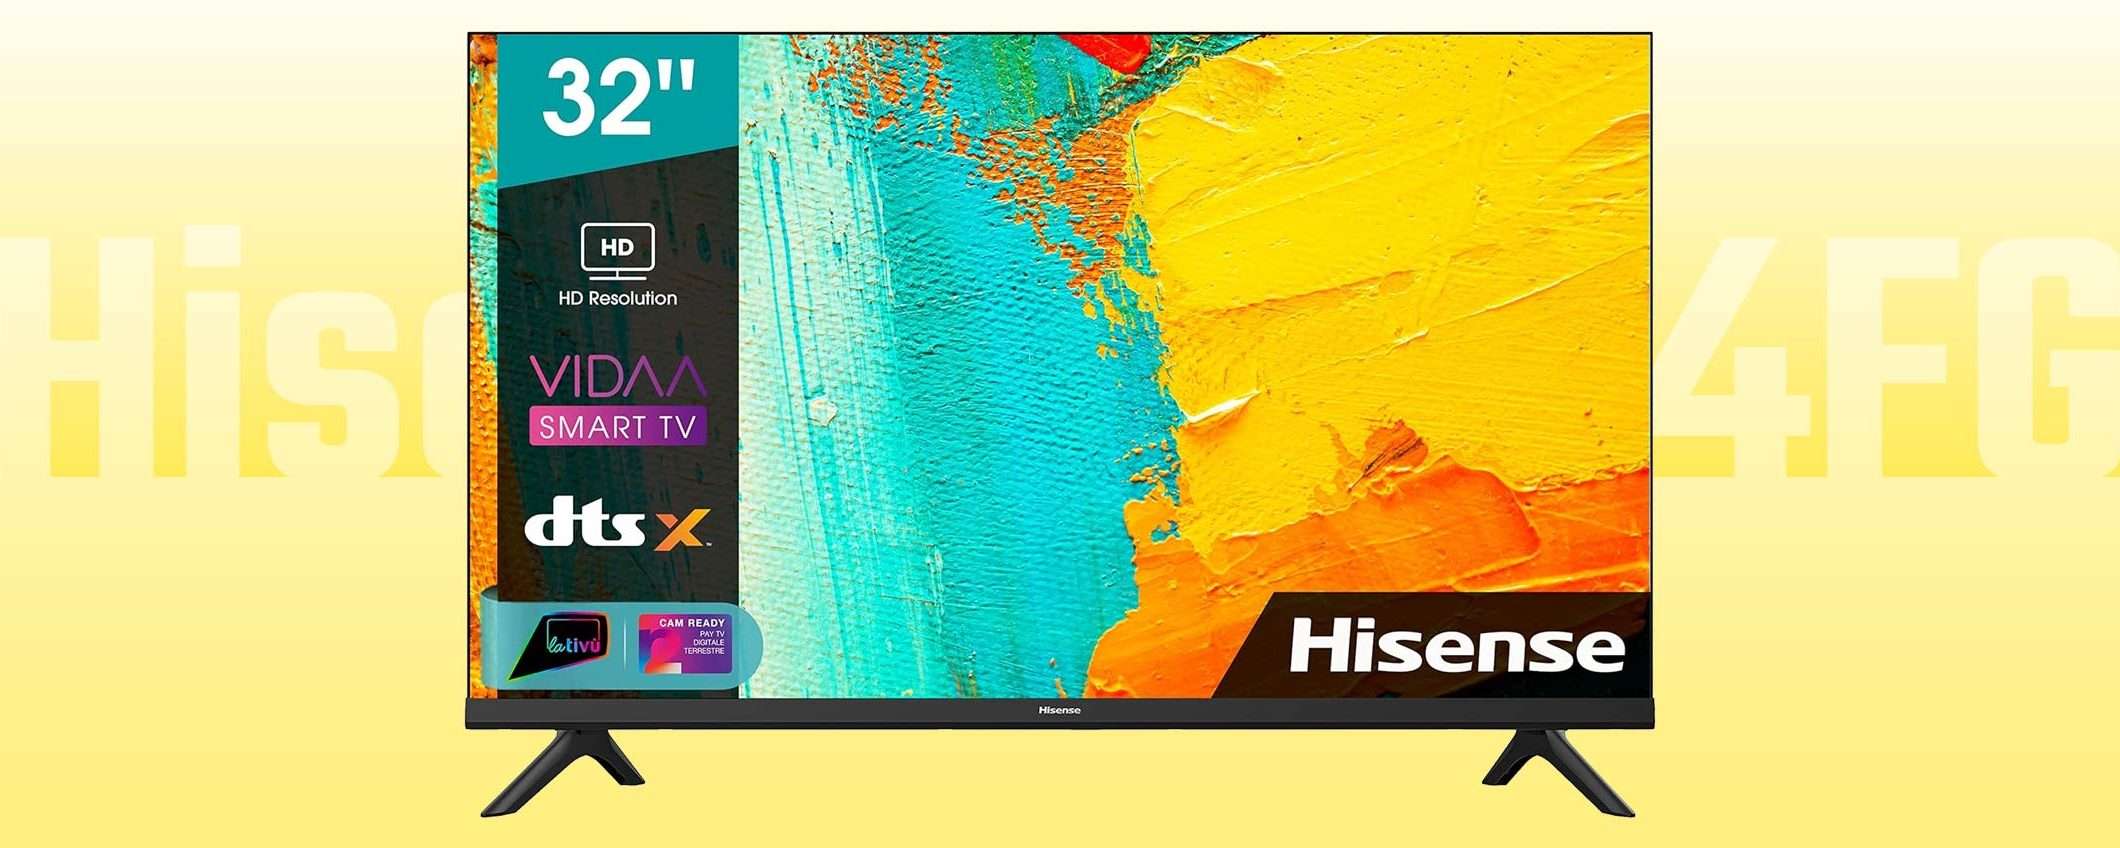 Smart TV Hisense (32 pollici) al PREZZO STRACCIATO di 179€